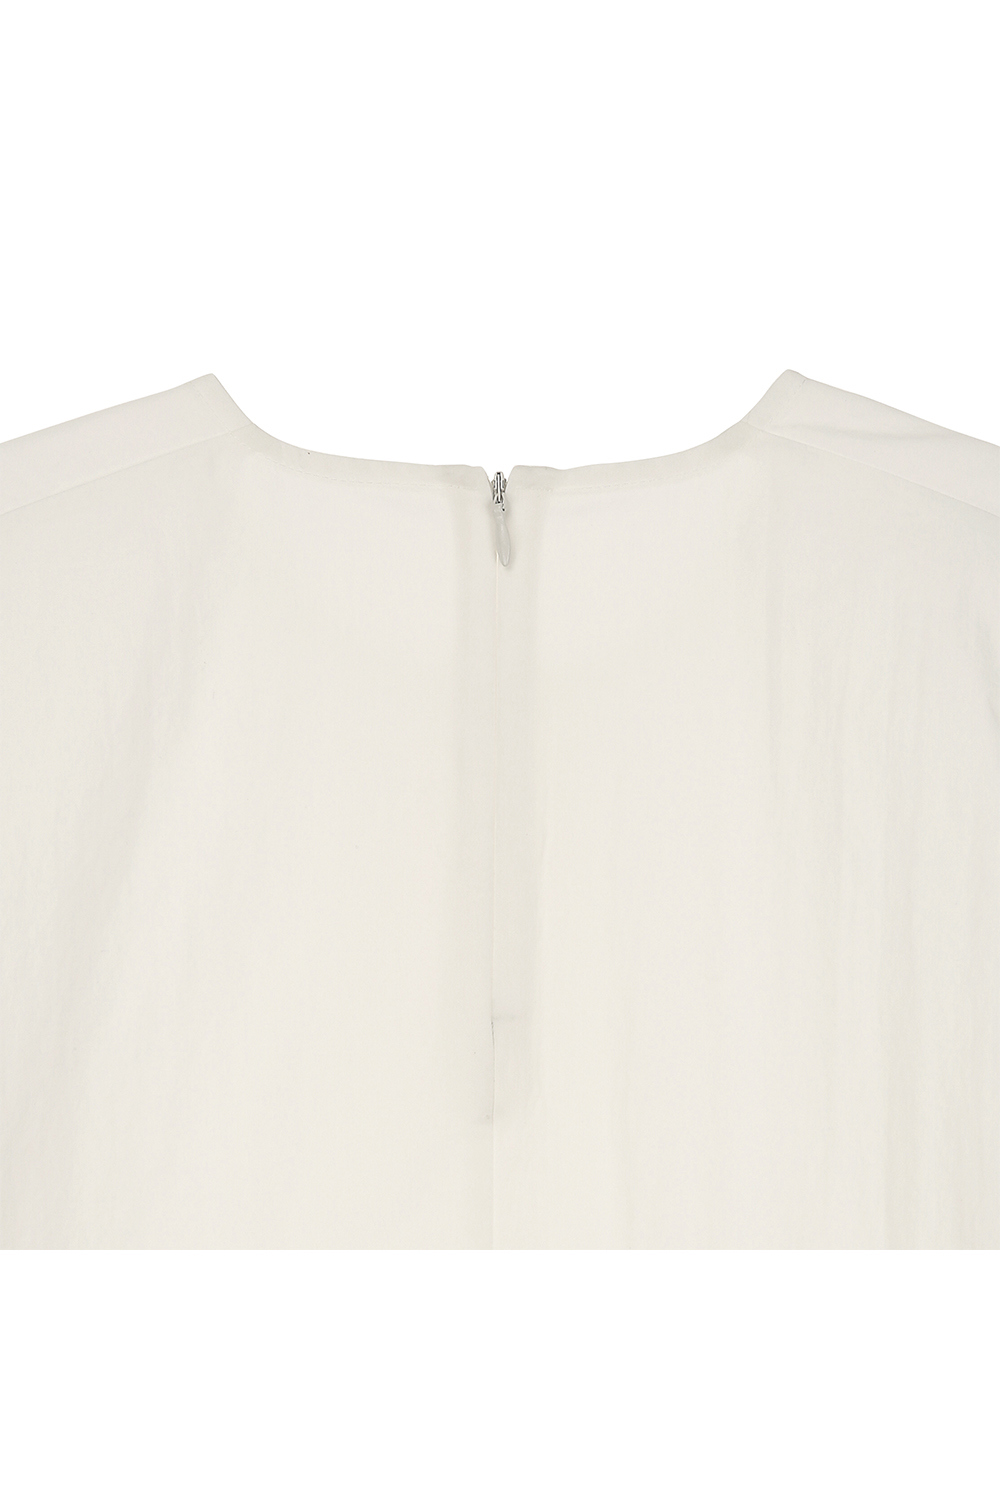 blouse detail image-S2L20